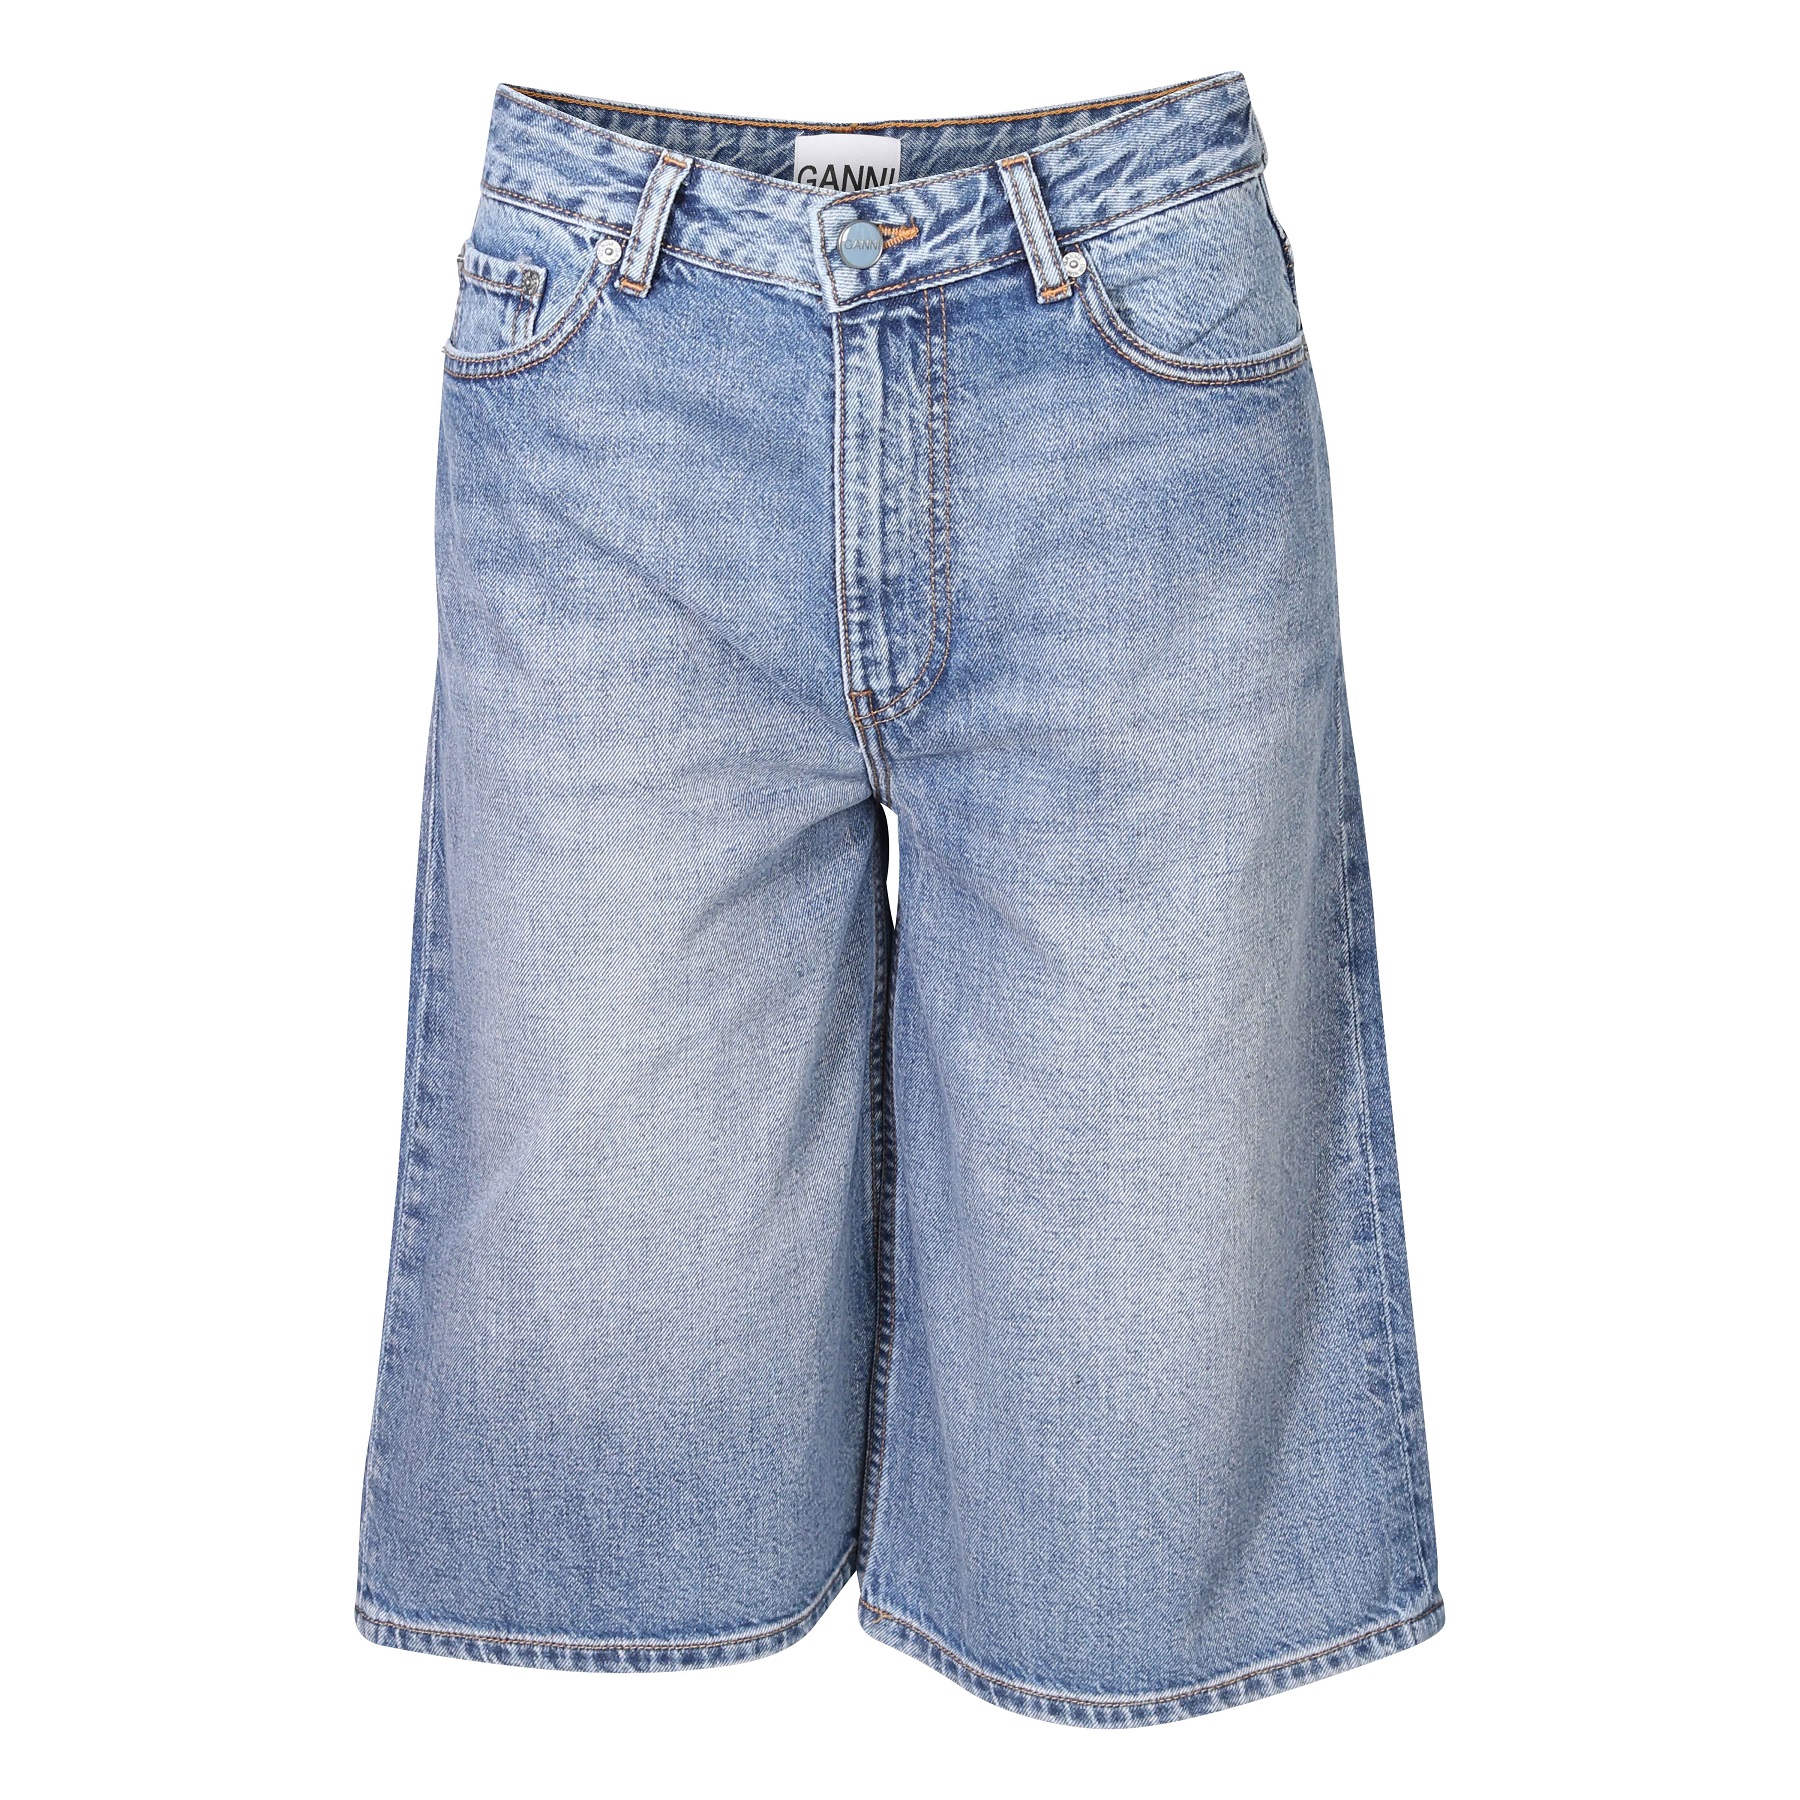 GANNI Vintage Washed Denim Wide Shorts 28